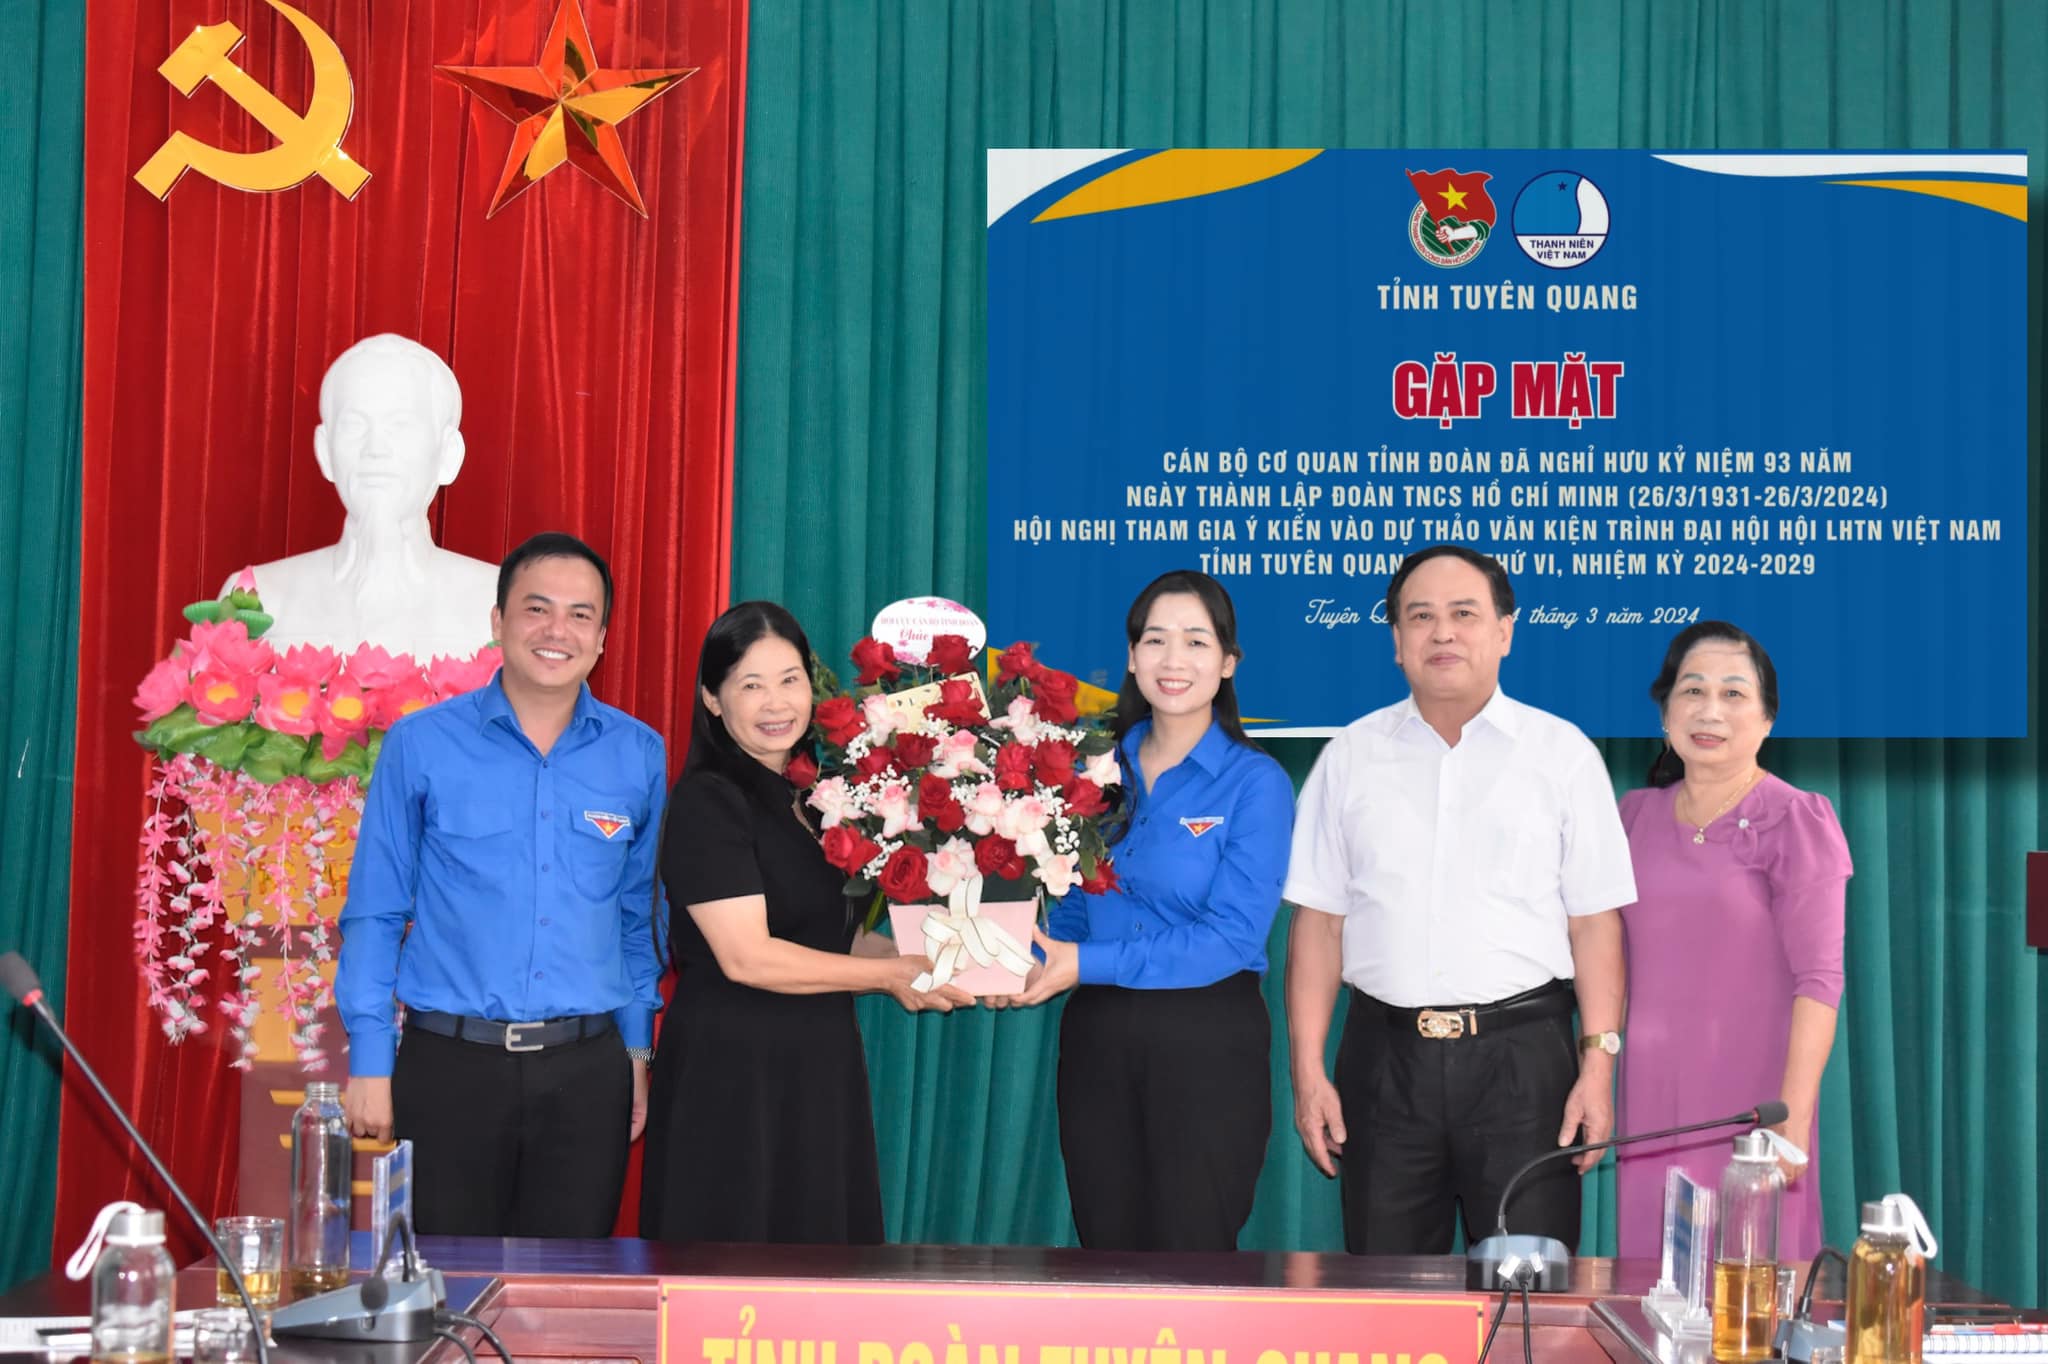 Tỉnh đoàn Tuyên Quang tổ chức gặp mặt Hội Cựu cán bộ cơ quan Tỉnh đoàn đã nghỉ hưu